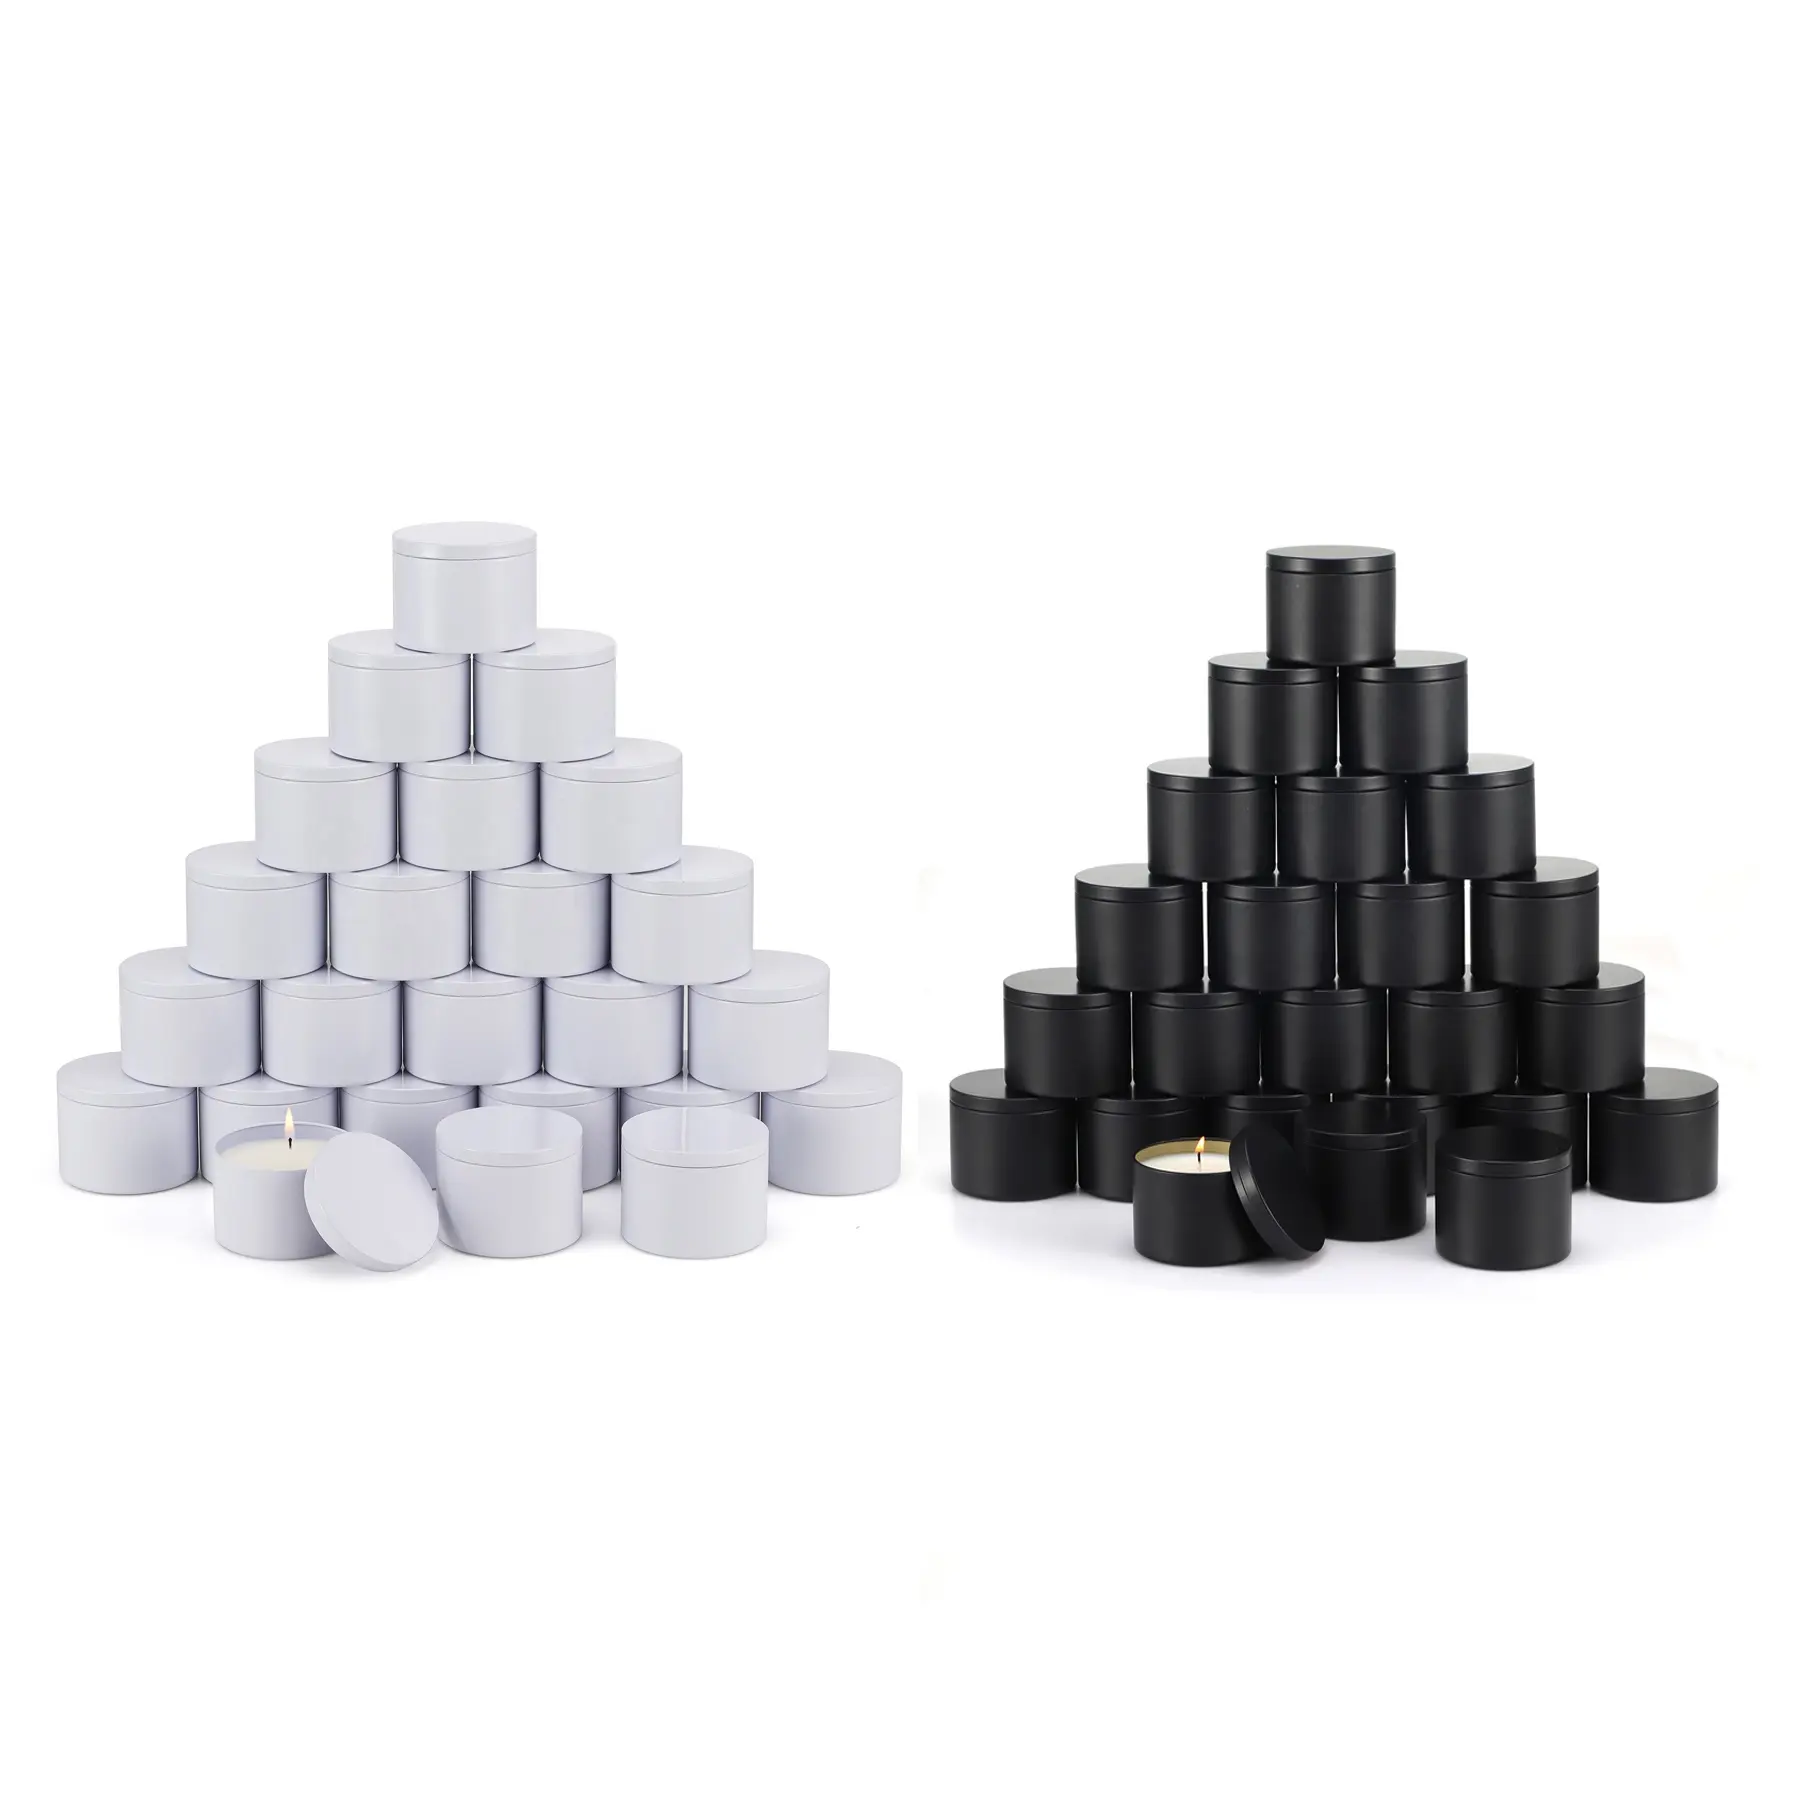 DIY उपहार धातु सुगंधित मोमबत्तियाँ बनाने के लिए 8OZ सफेद मैट काला सीमलेस सिलेंडर डिज़ाइन मोमबत्ती टिन कैन जार